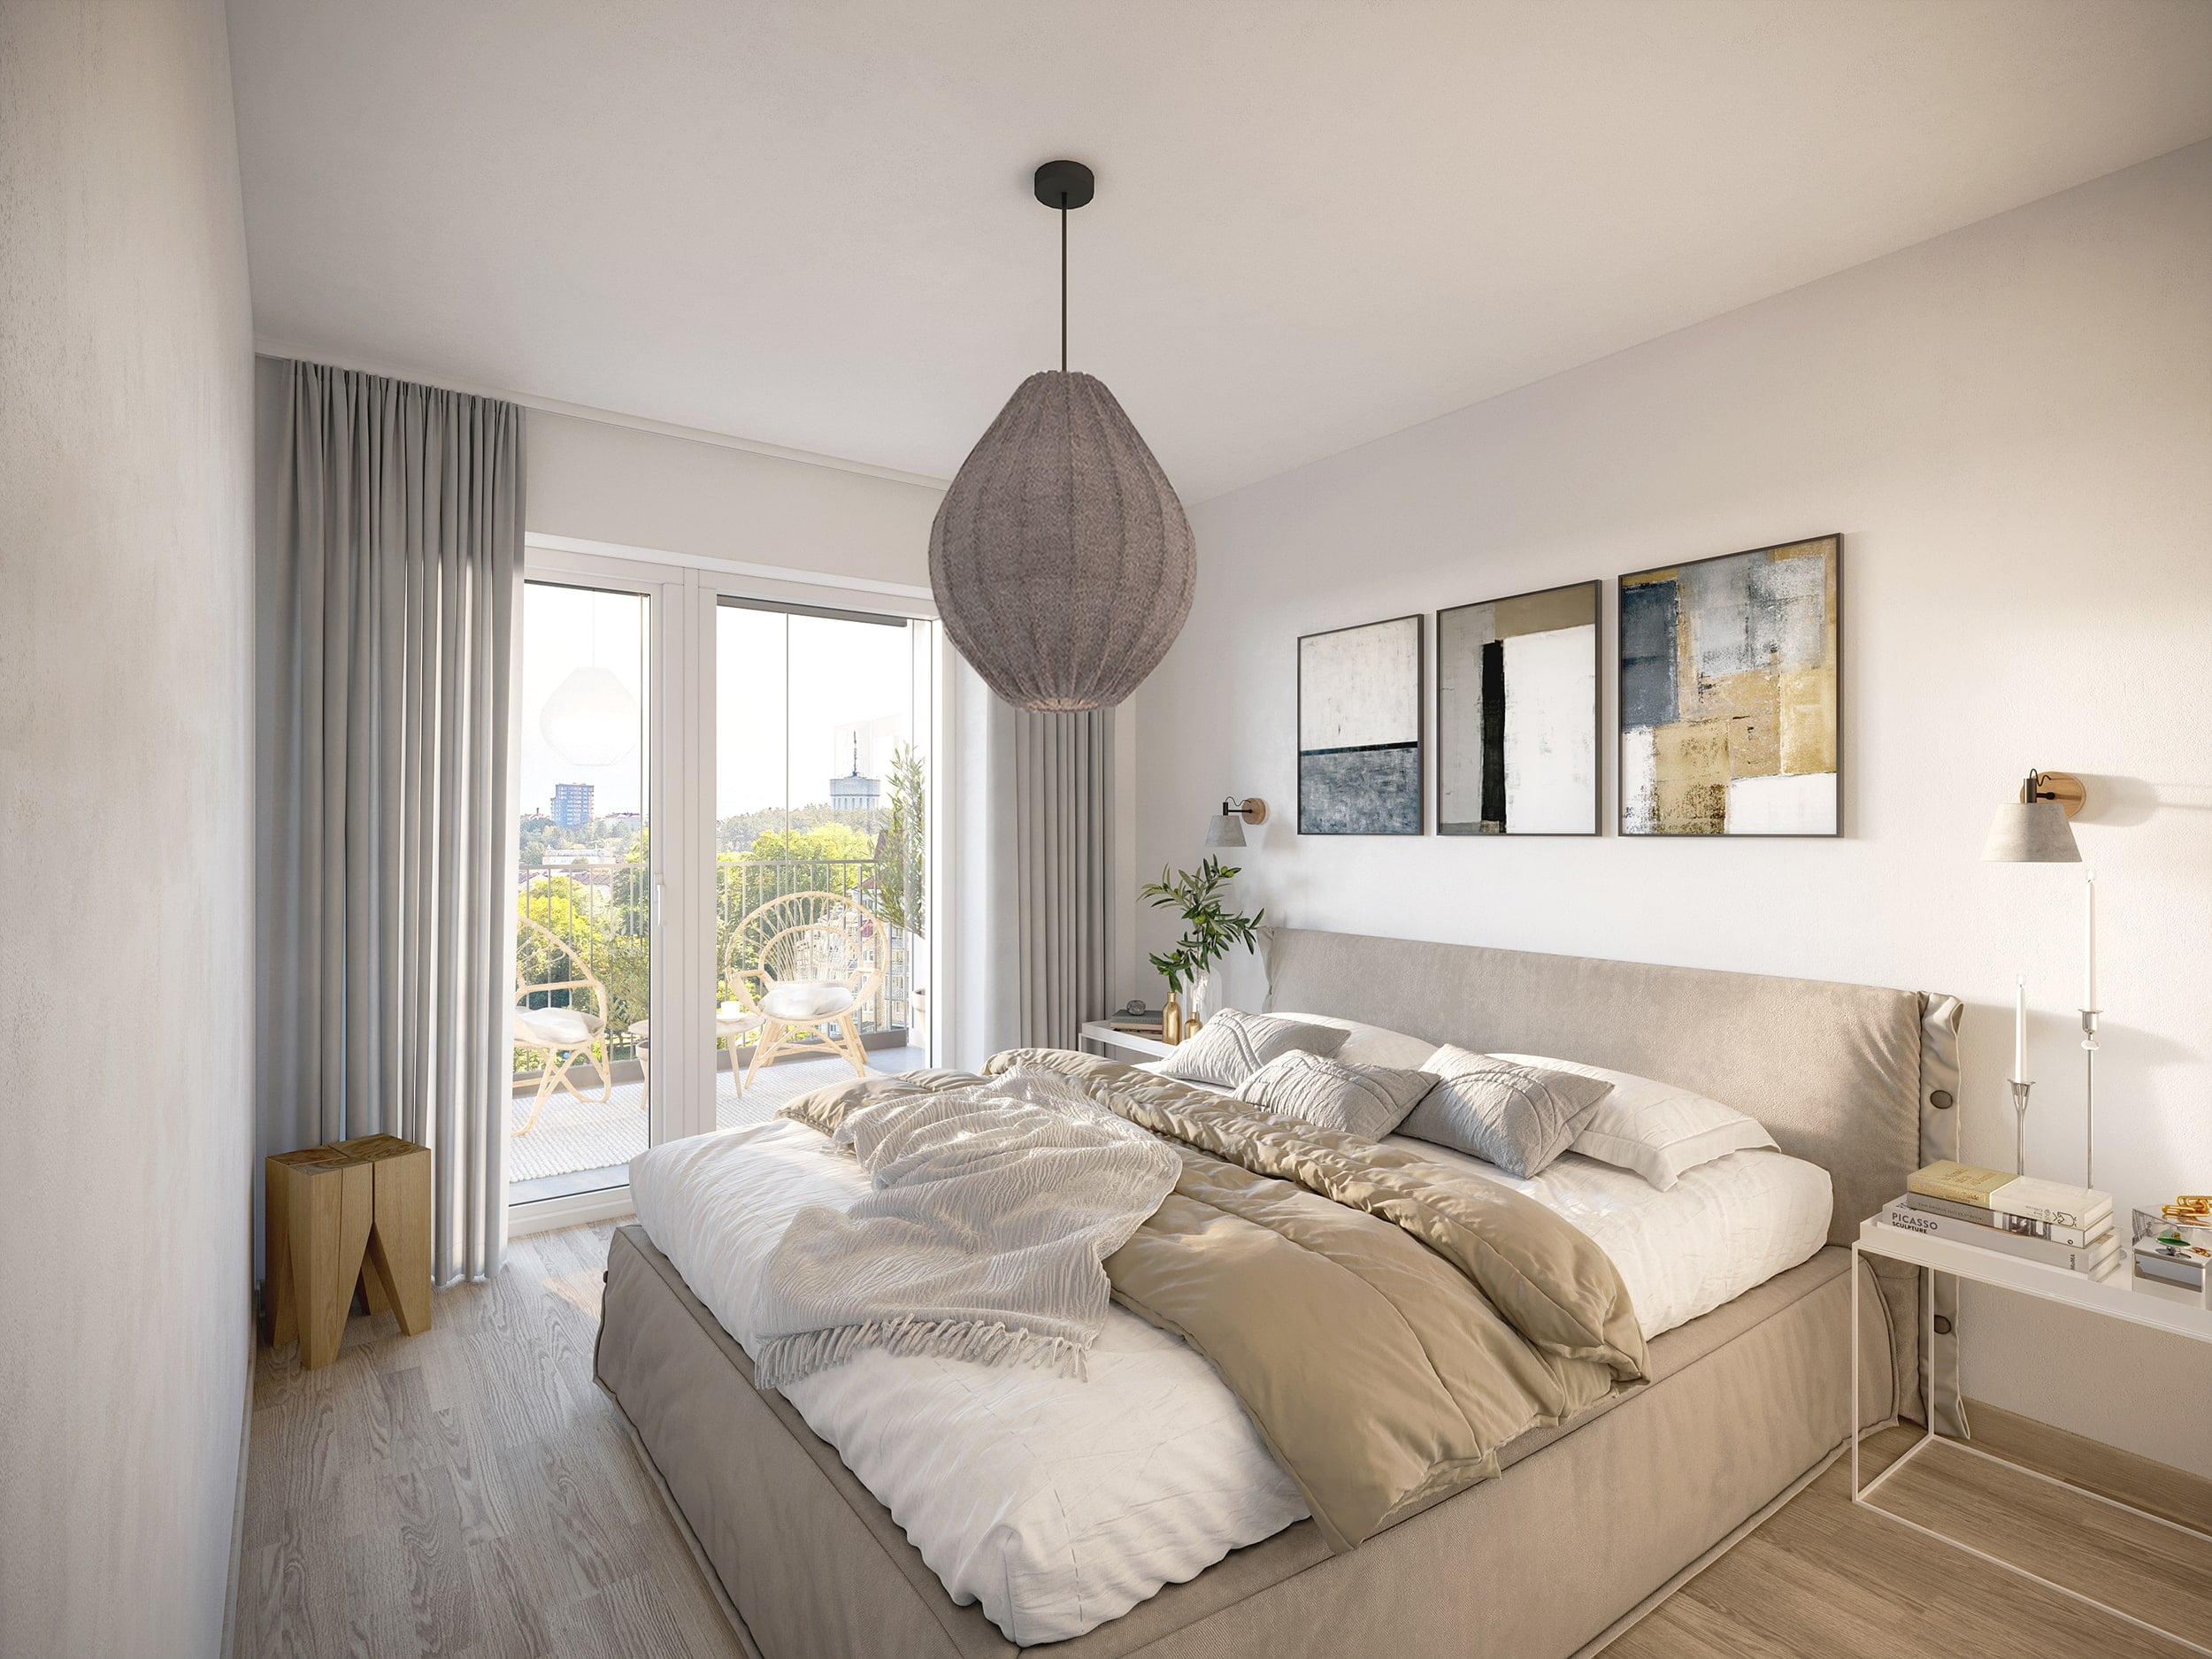 Interiör visualisering av sovrum ifrån lägenhet i Linköping